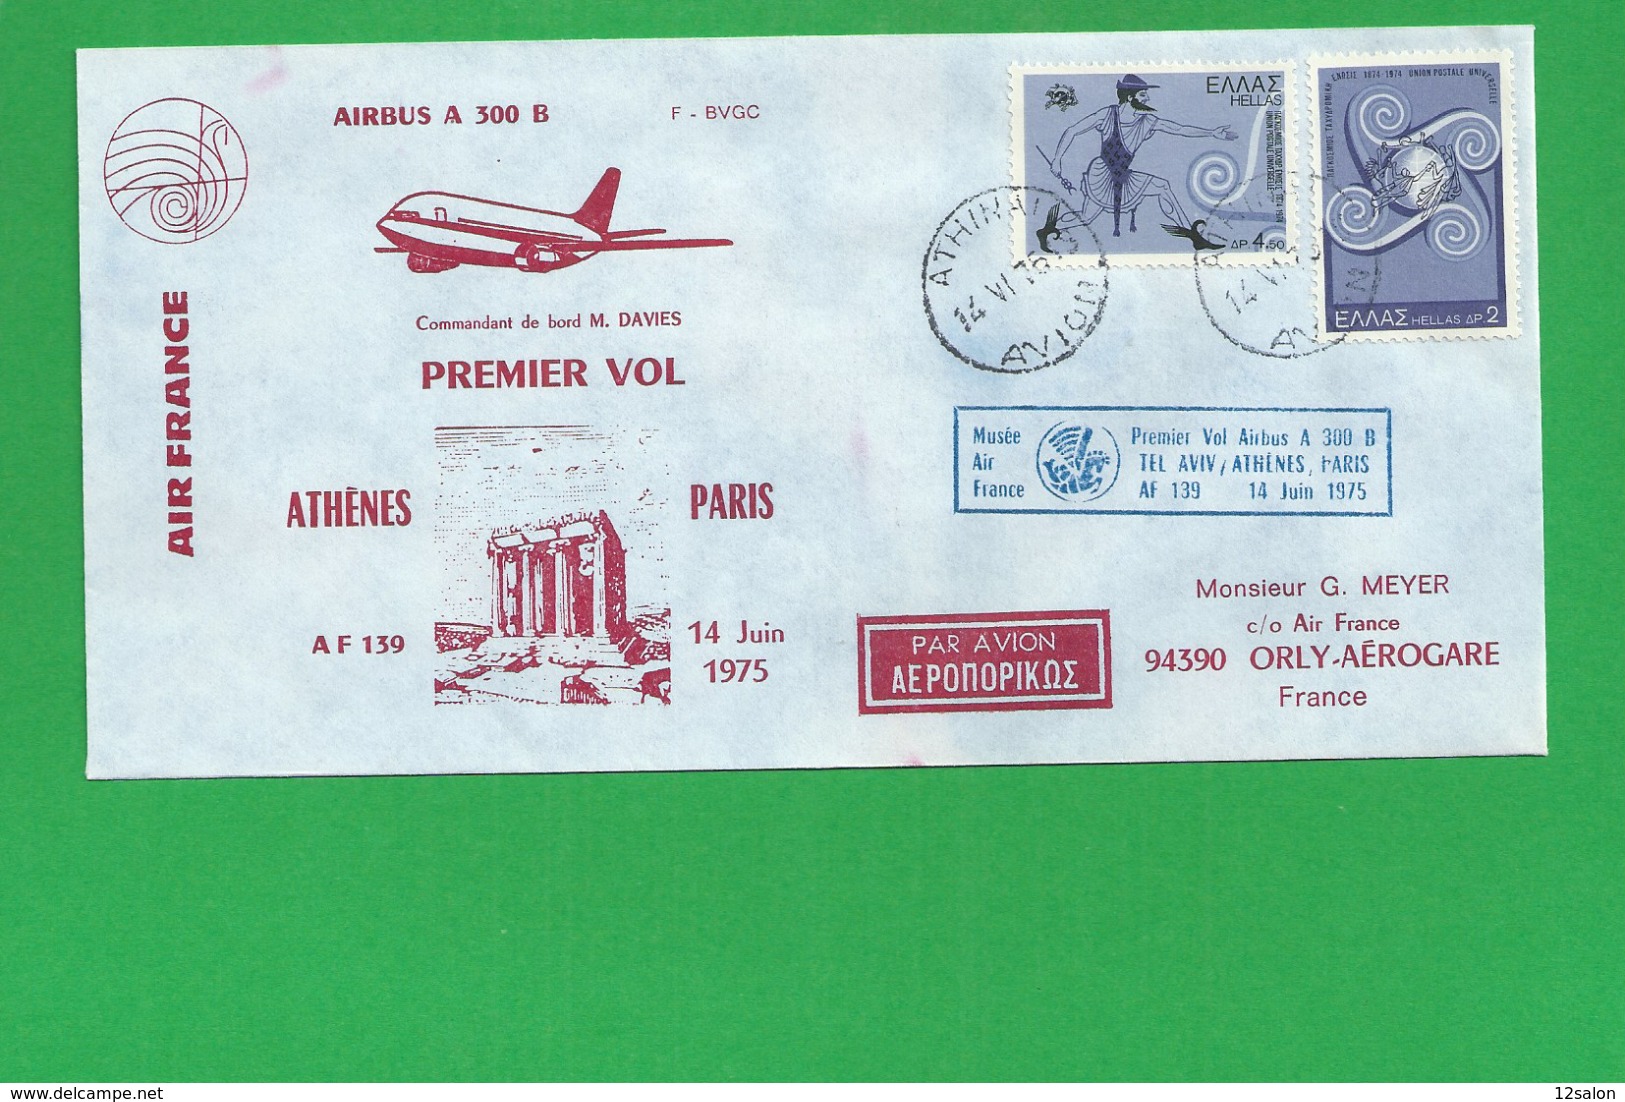 PREMIERE LIAISON AIRBUS A 300 B ARHENES PARIS - 1960-.... Storia Postale